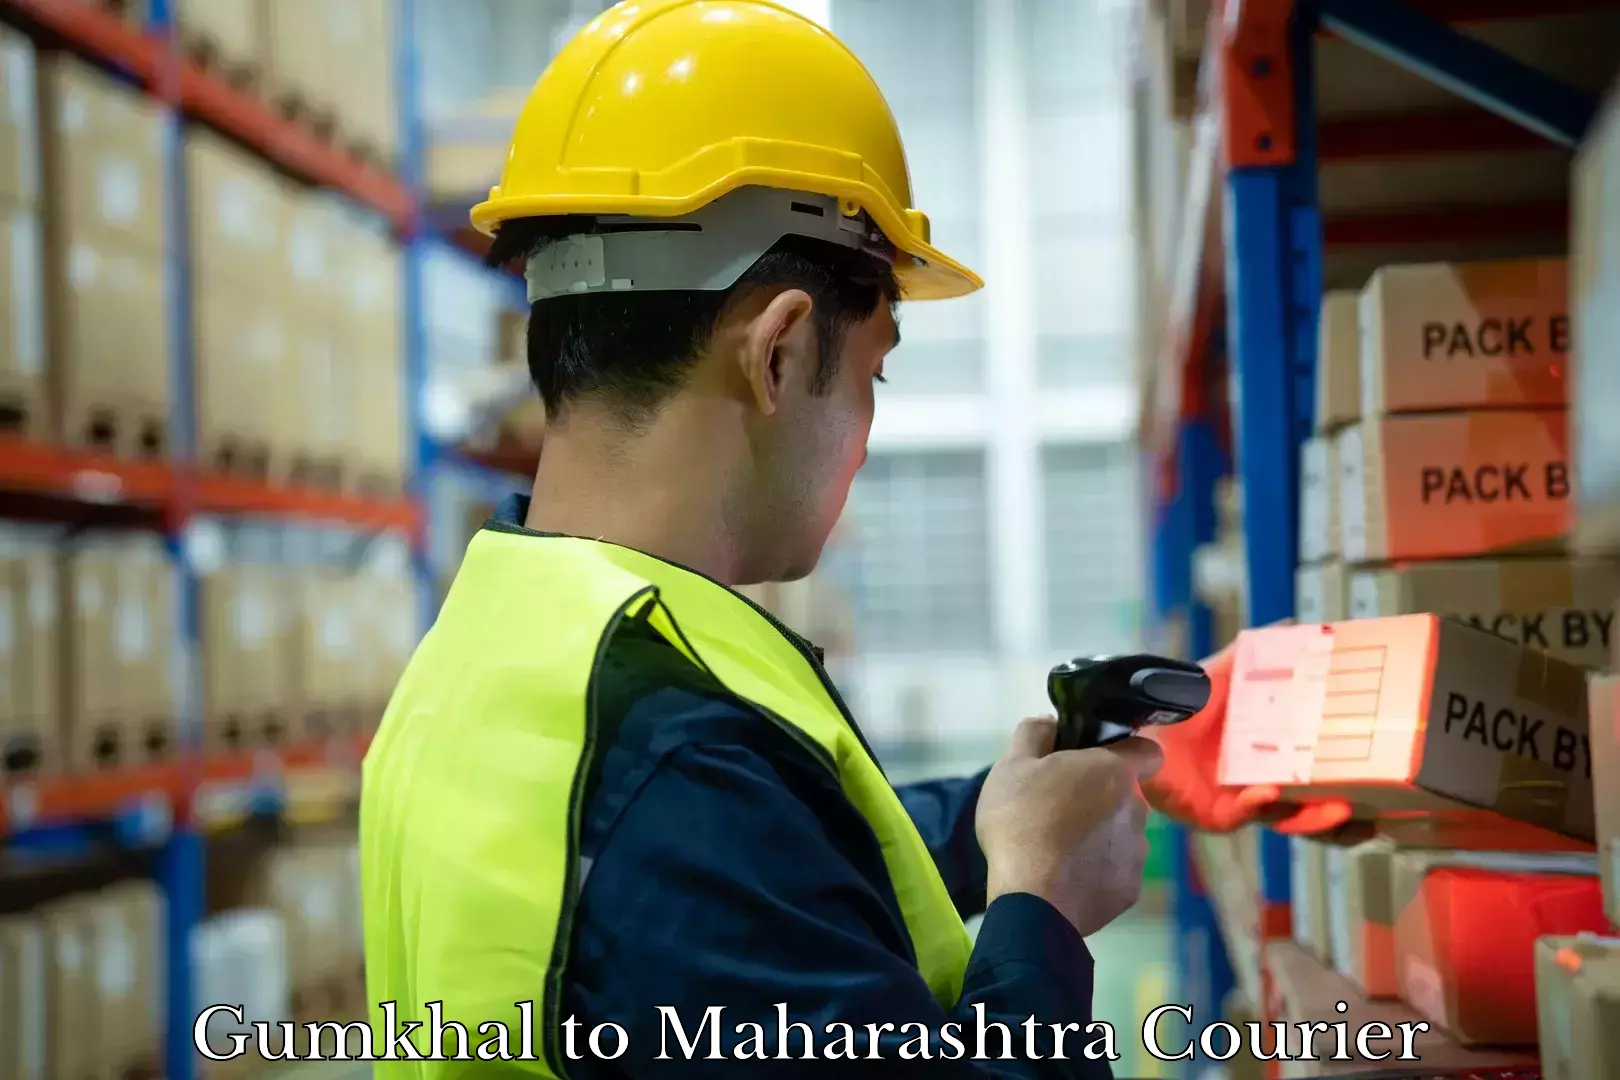 Baggage shipping experts Gumkhal to Maharashtra